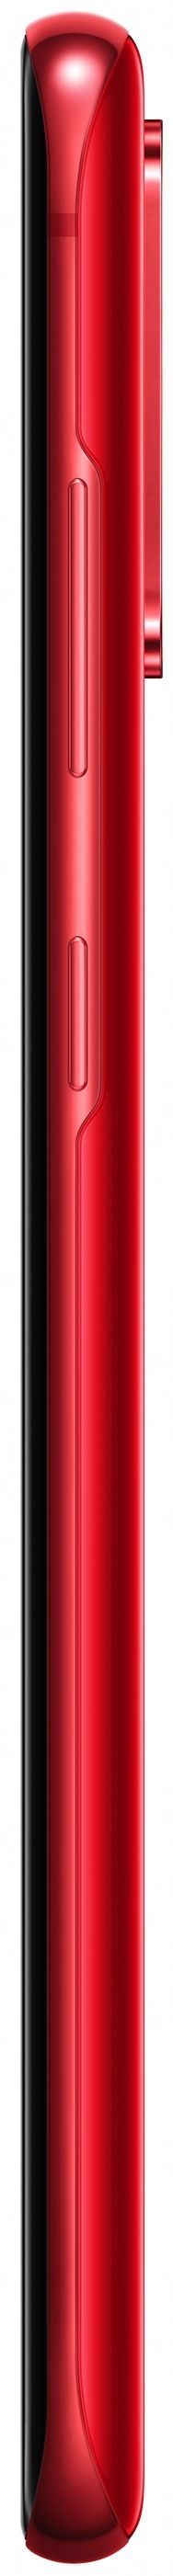 Акція на Смартфон Samsung Galaxy S20 Plus (SM-G985FZRDSEK) Red від Територія твоєї техніки - 3